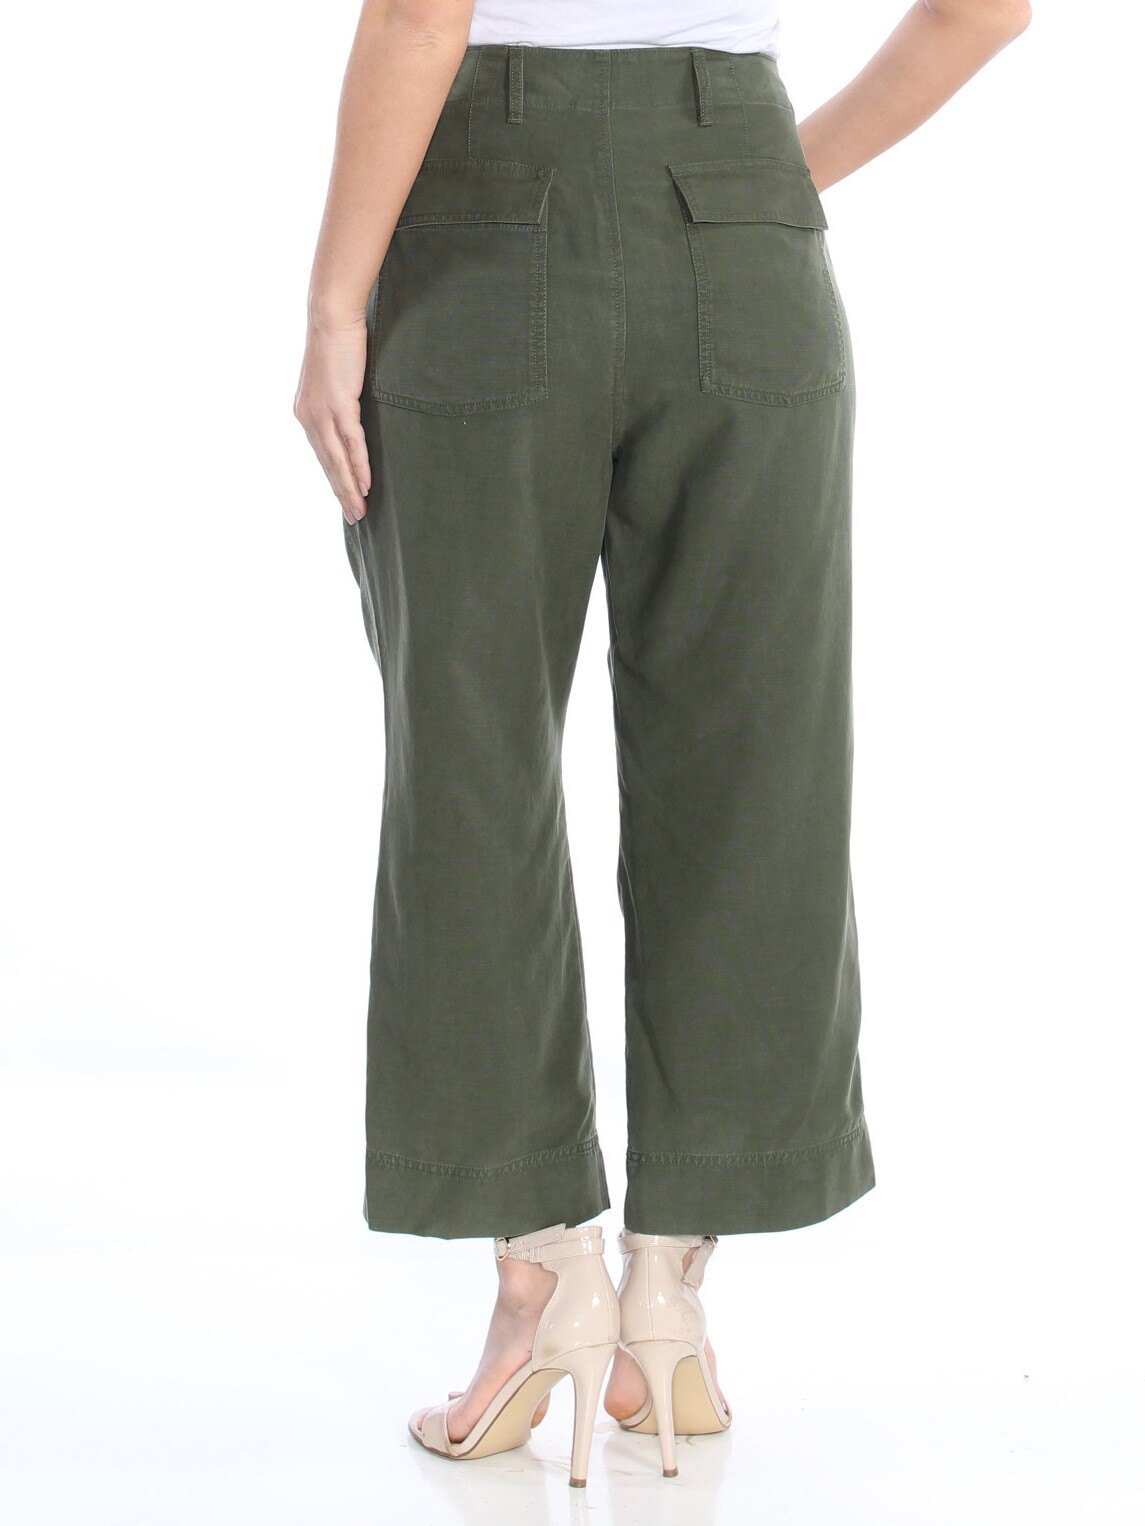 RALPH LAUREN Women's Green Pants